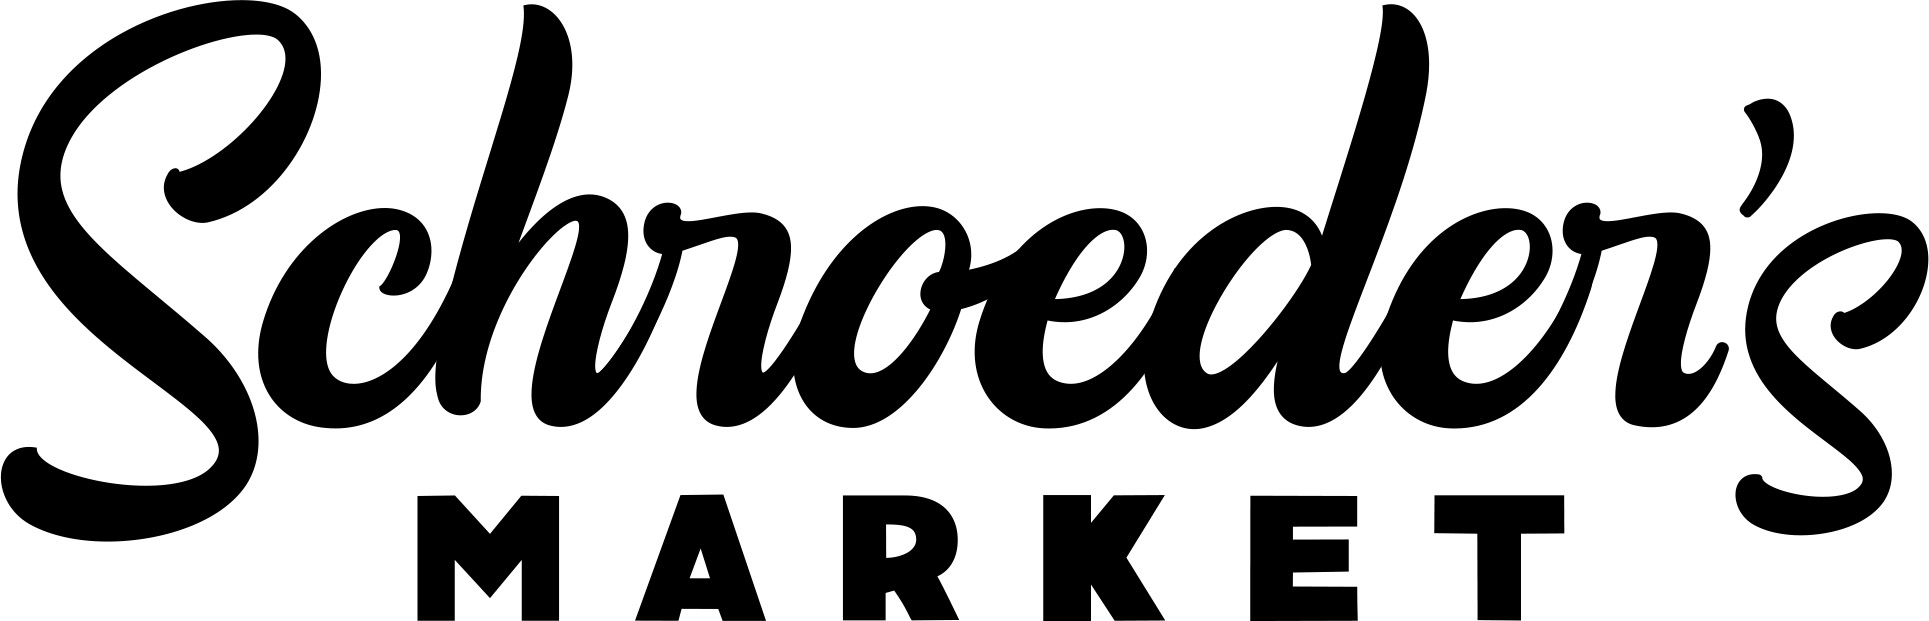 Schroeders Market logo